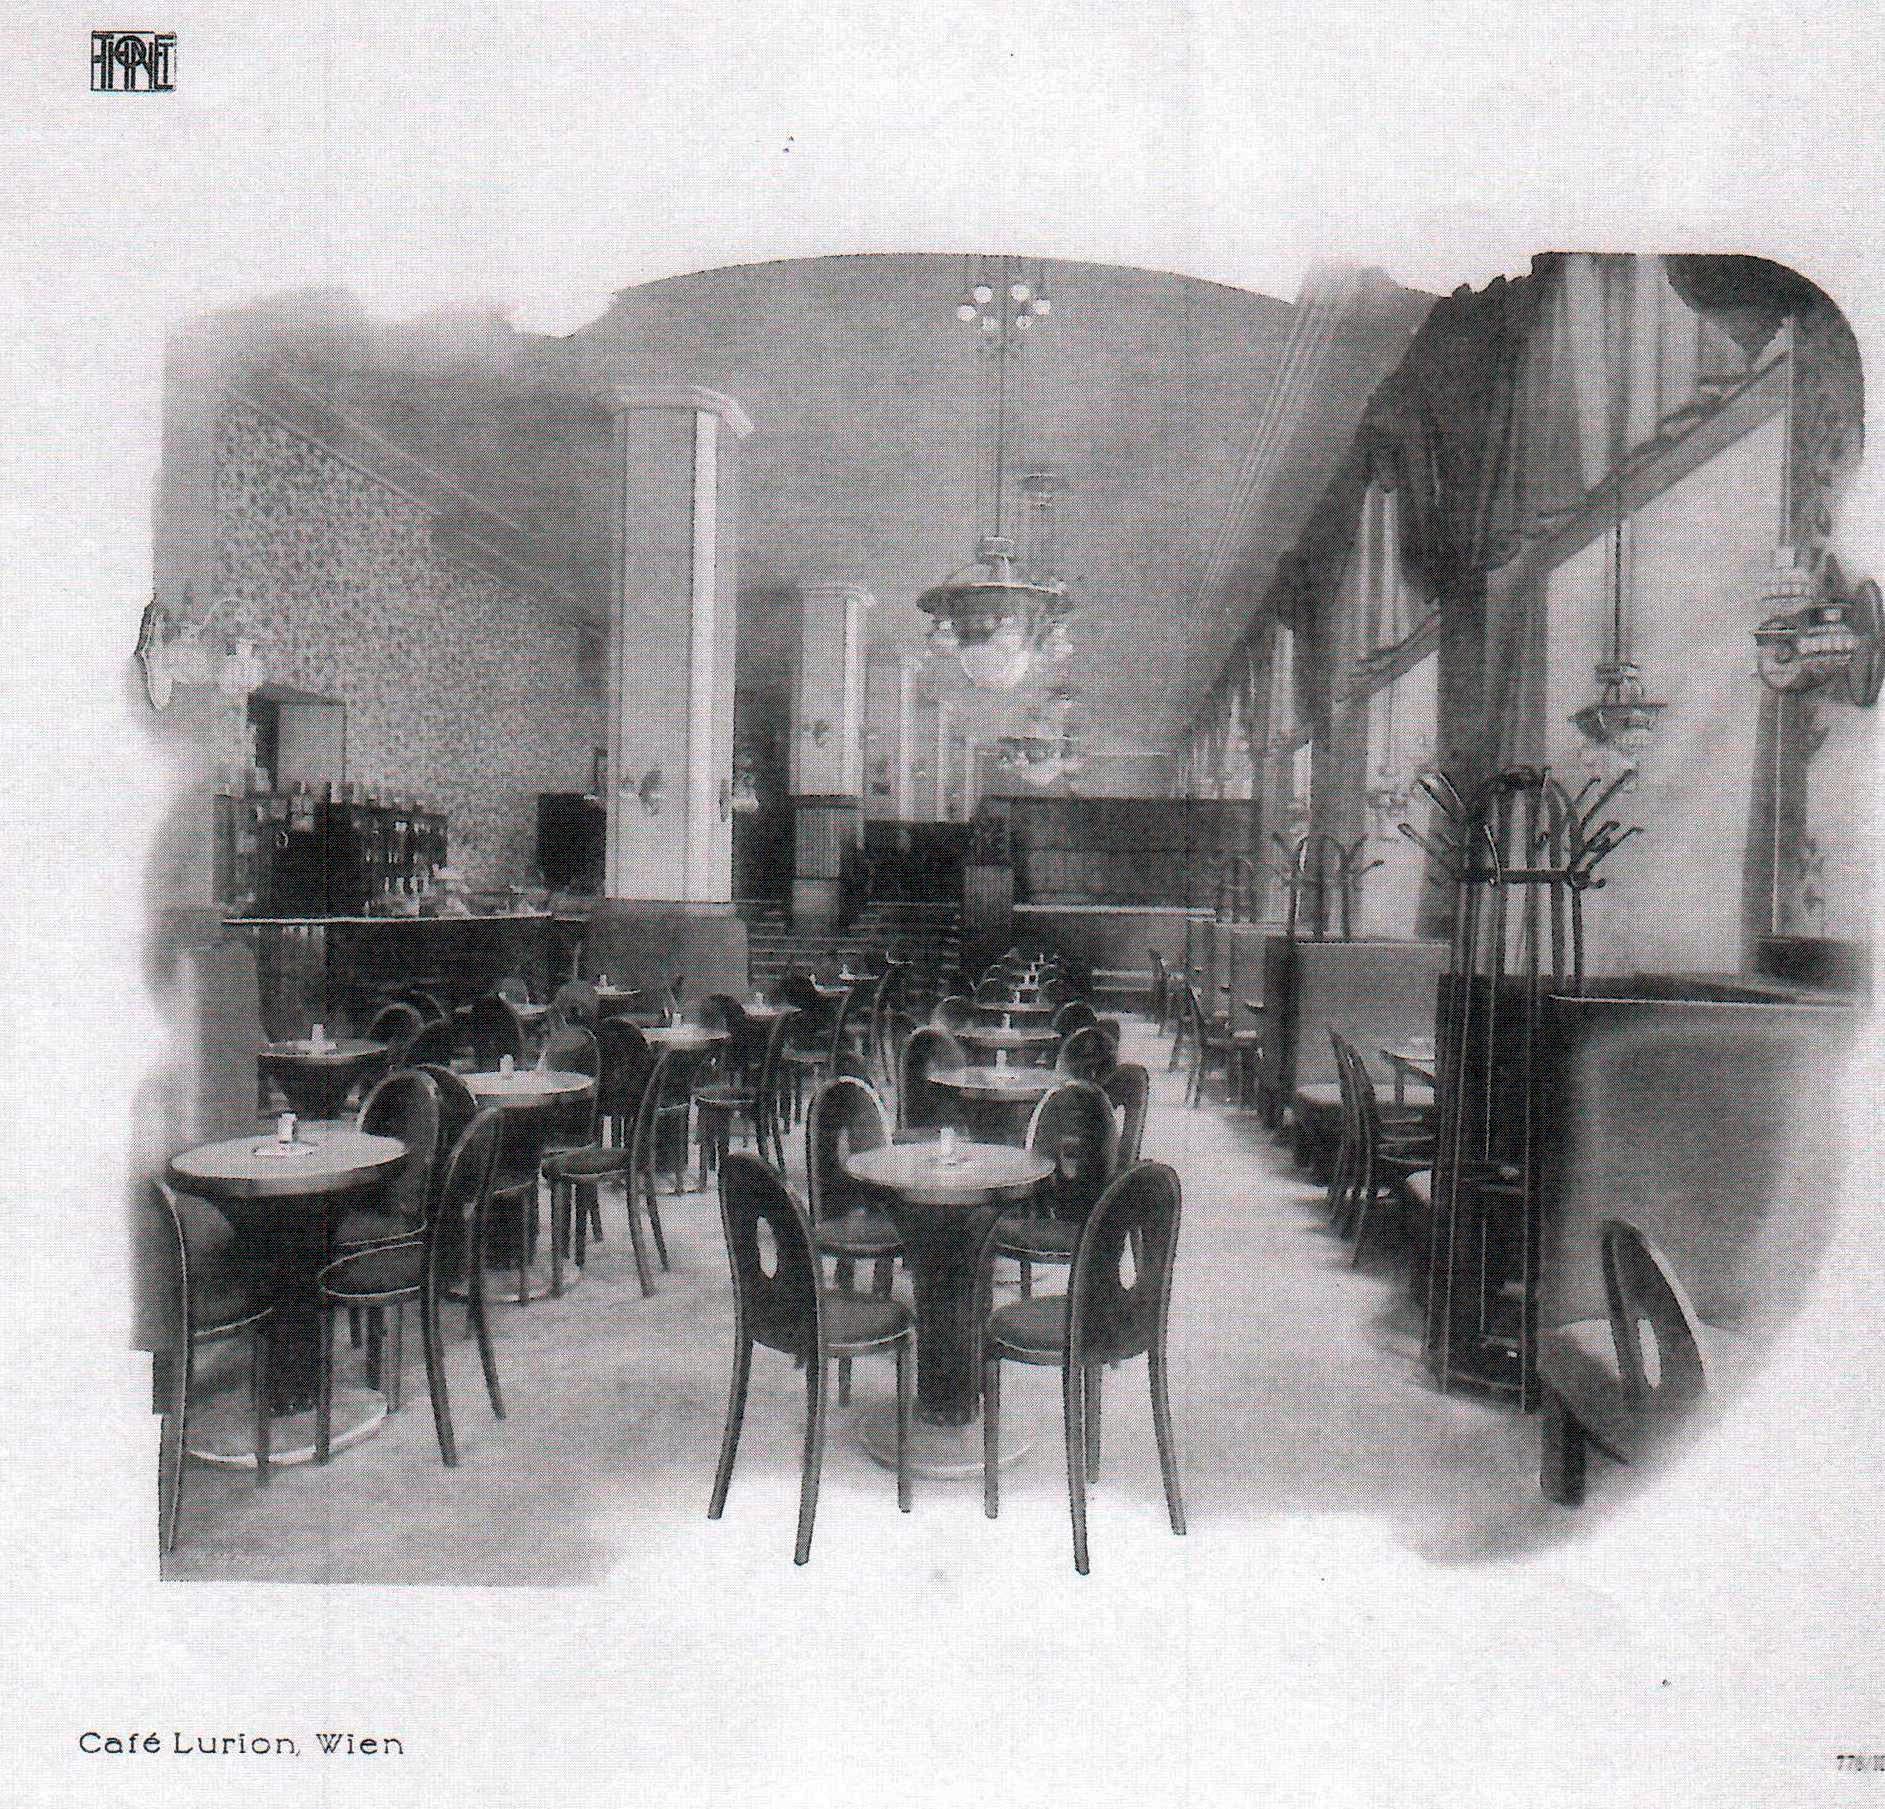 Austrian Thonet Vienna Art Nouveau Table Model 8350 Otto Prutscher for Café Lurion